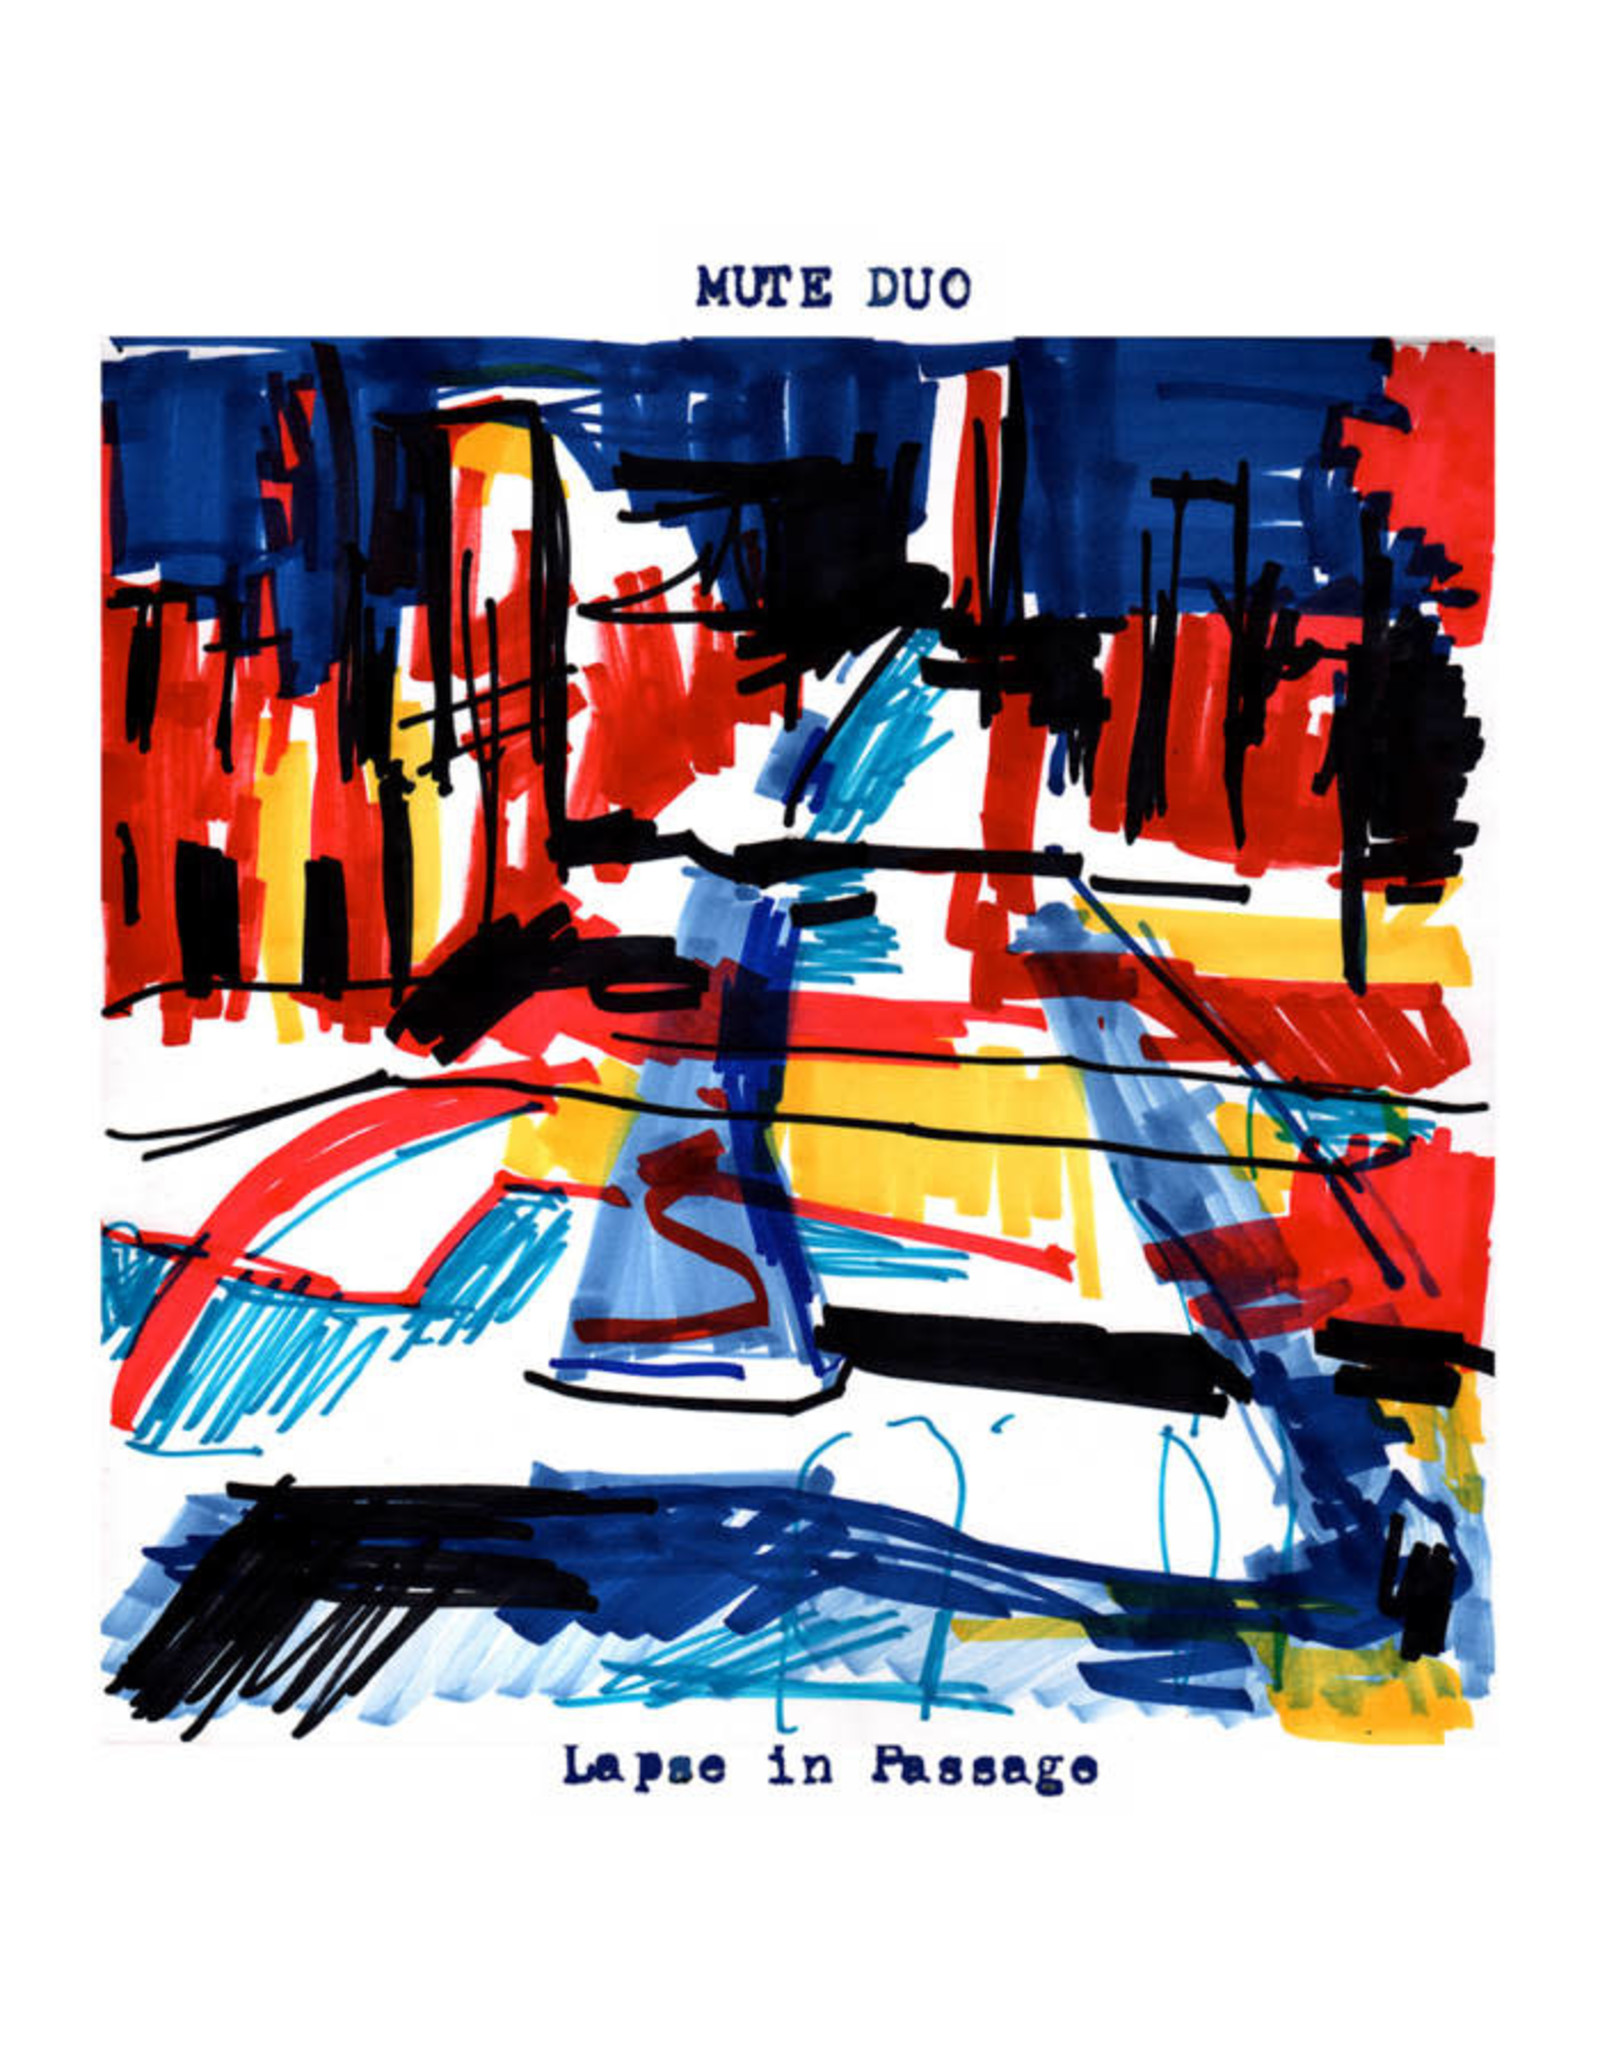 New Vinyl Mute Duo - Lapse In Passage LP